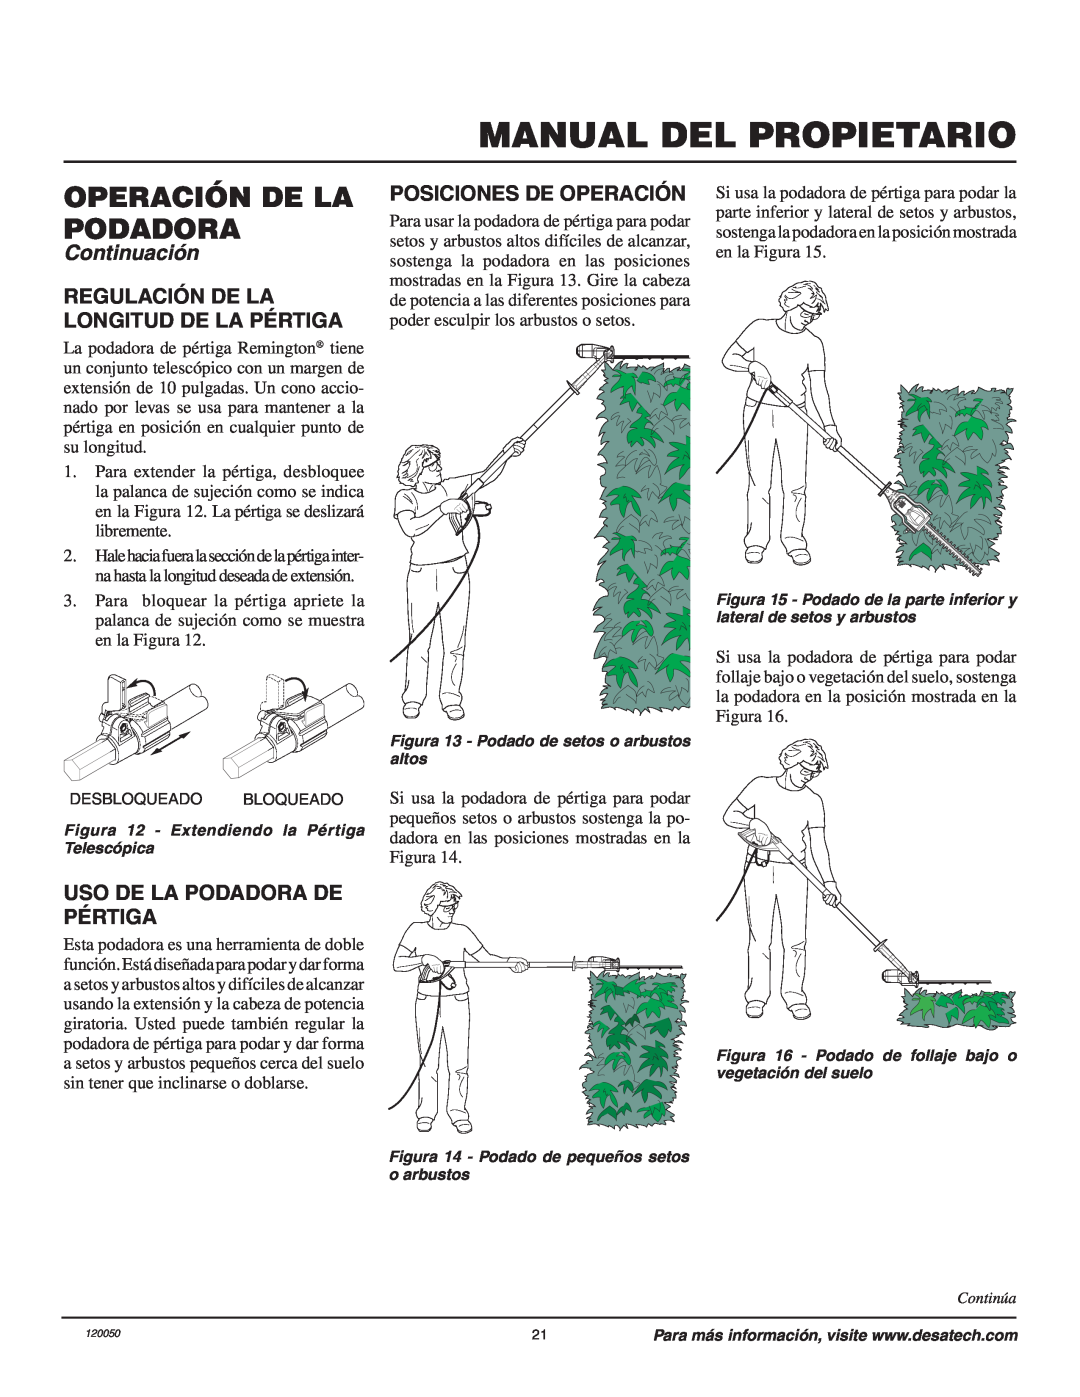 Remington AT3017BCA owner manual Manual Del Propietario, Operación De La Podadora, Continuación, Posiciones De Operación 